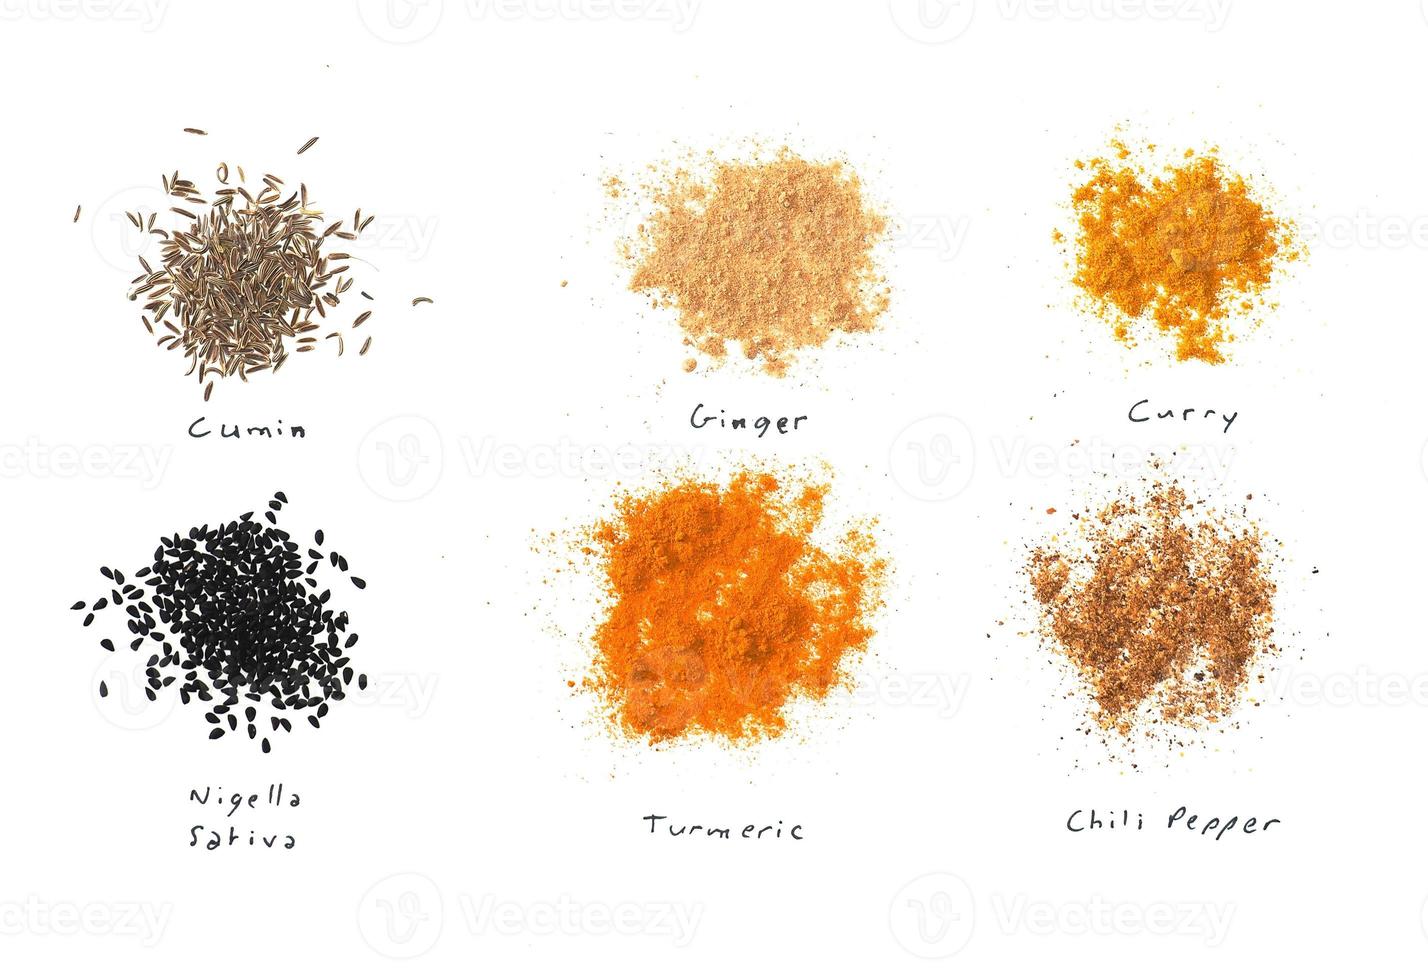 muitas especiarias, incluindo curry de gengibre açafrão-da-índia pimenta cominho preto nigella sativa sobre branco foto